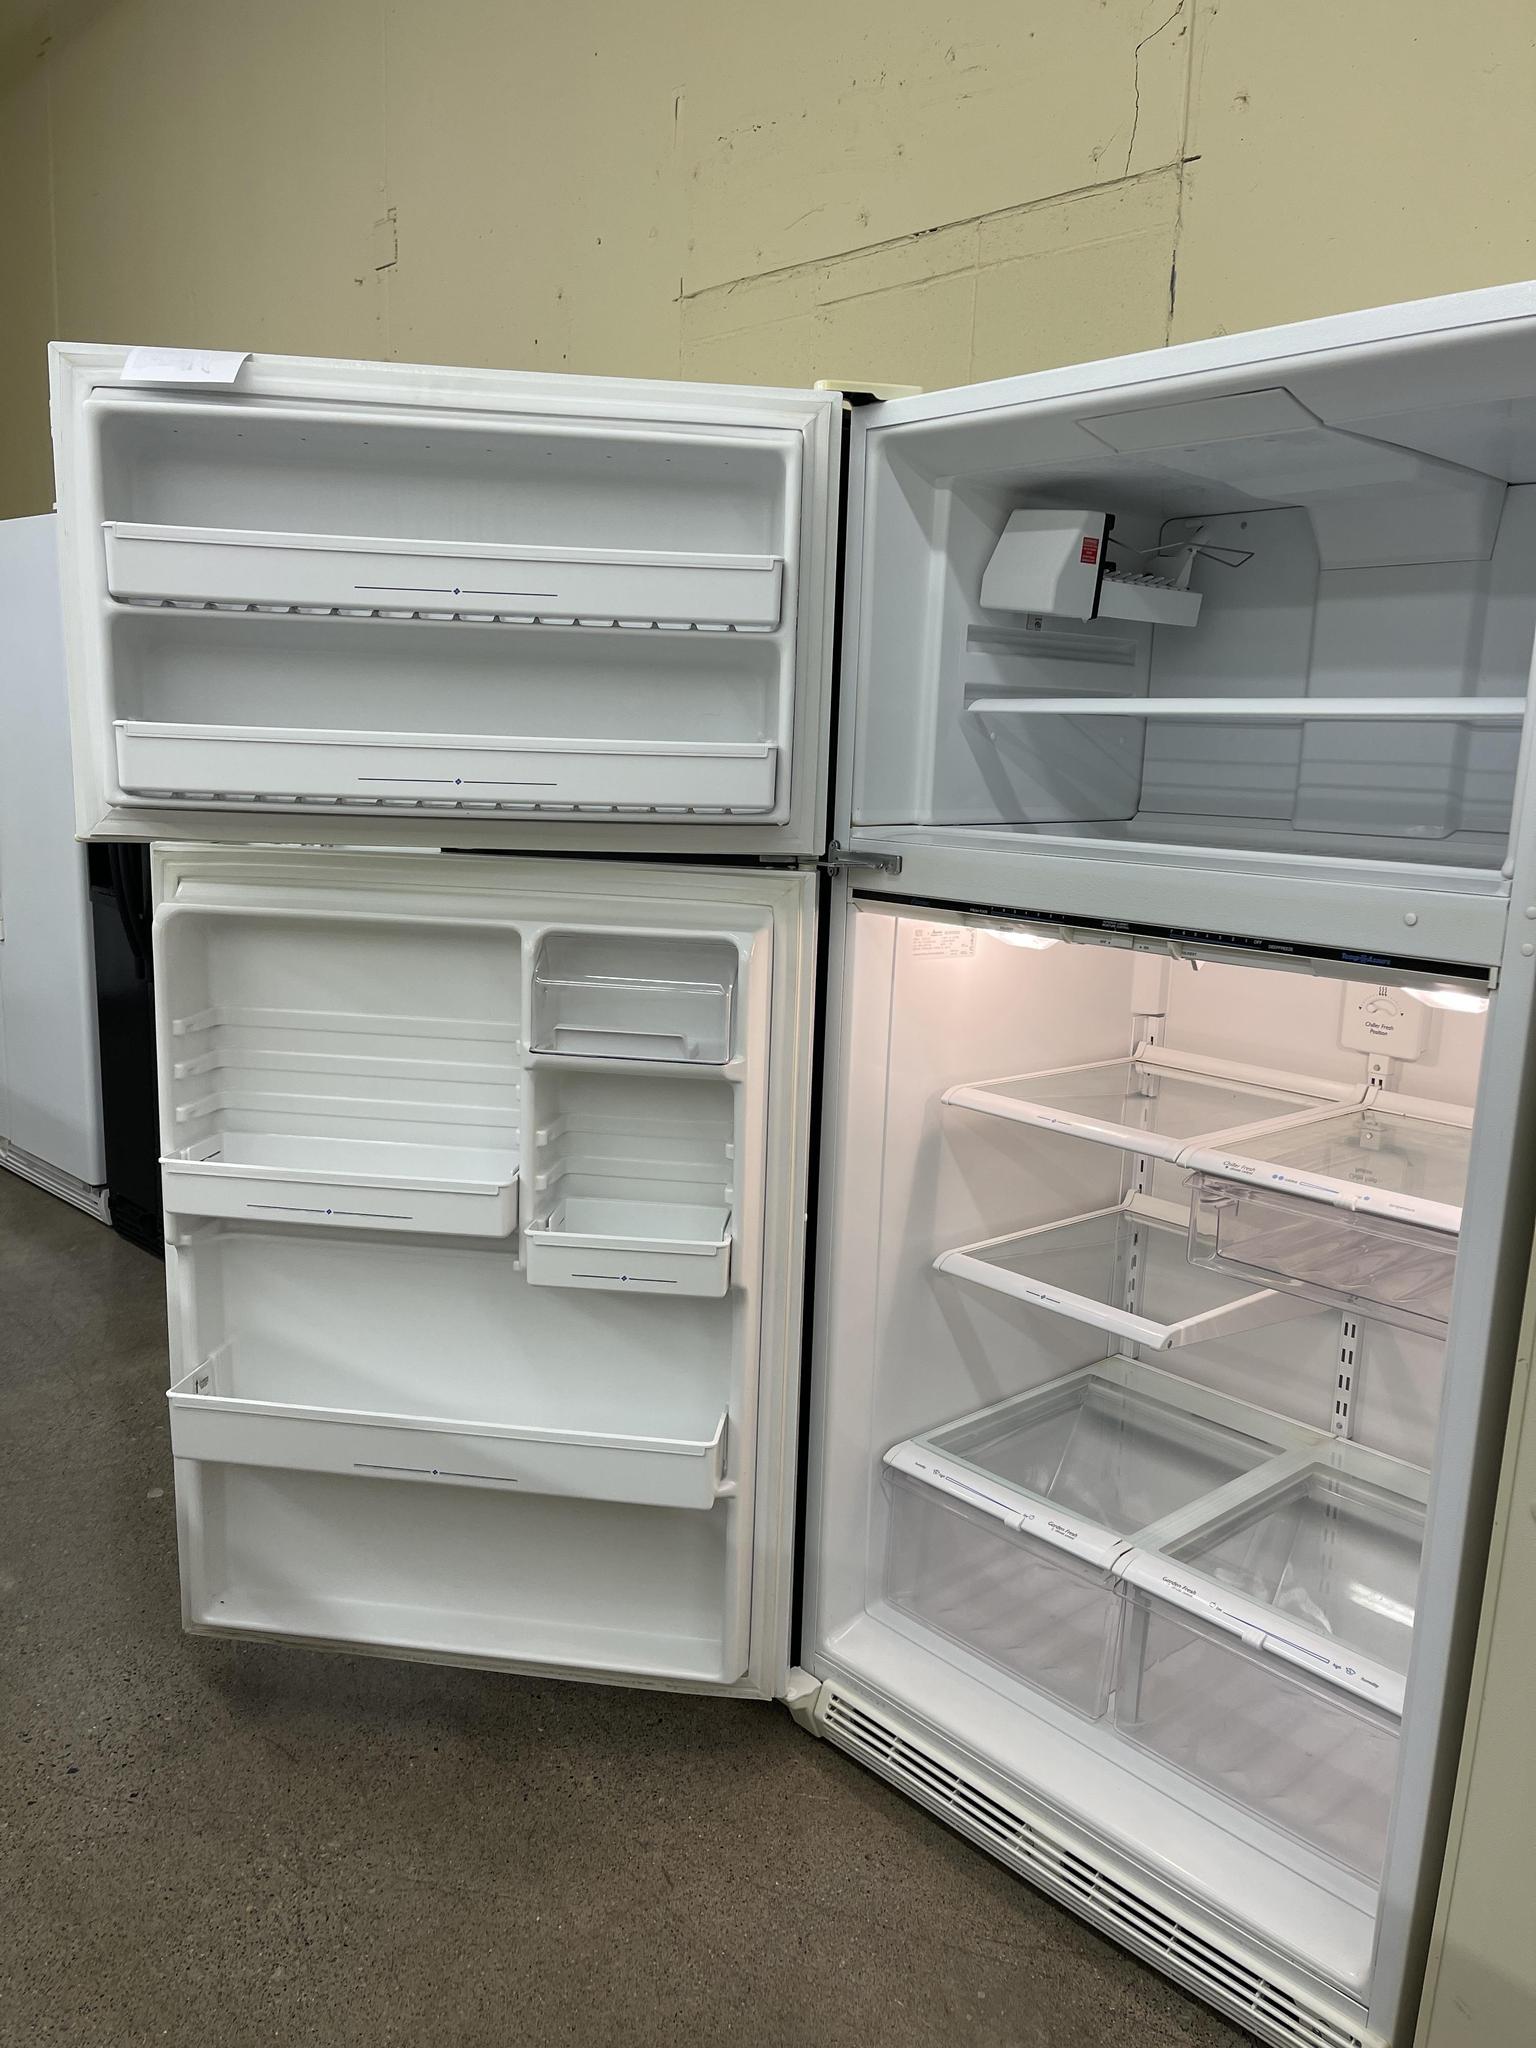 RCA - 10 Cu ft Top-Freezer Apartment-Size Retro Refrigerator - Blue, Rfr1055